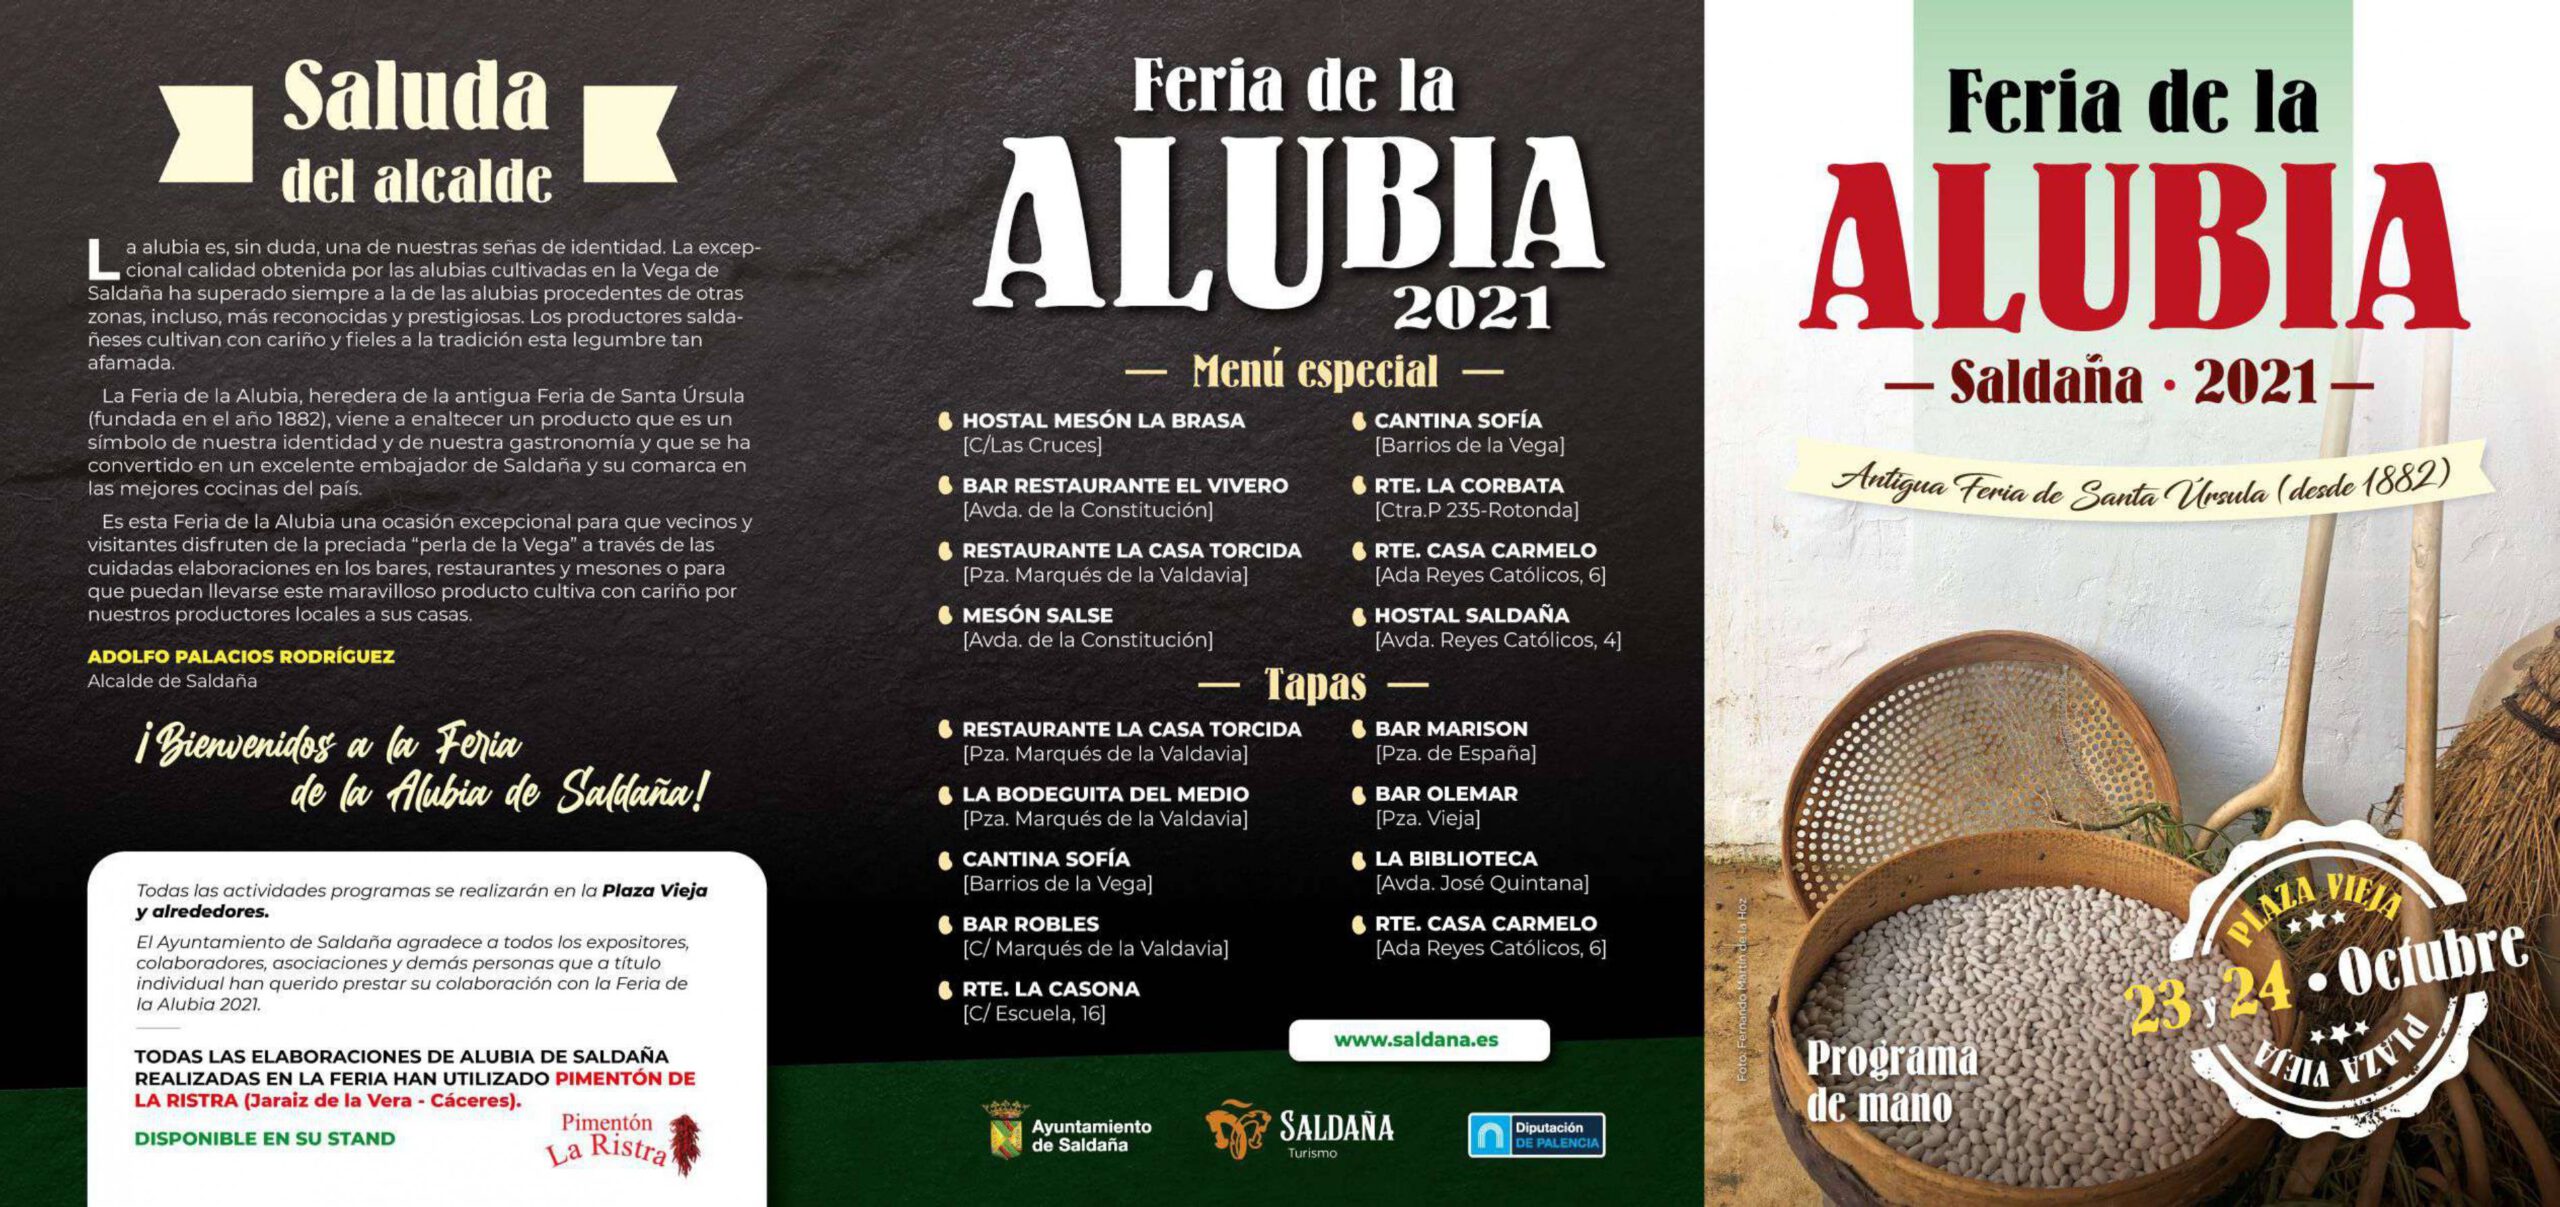 Feria de la Alubia (2021) - Saldaña (Palencia) 1